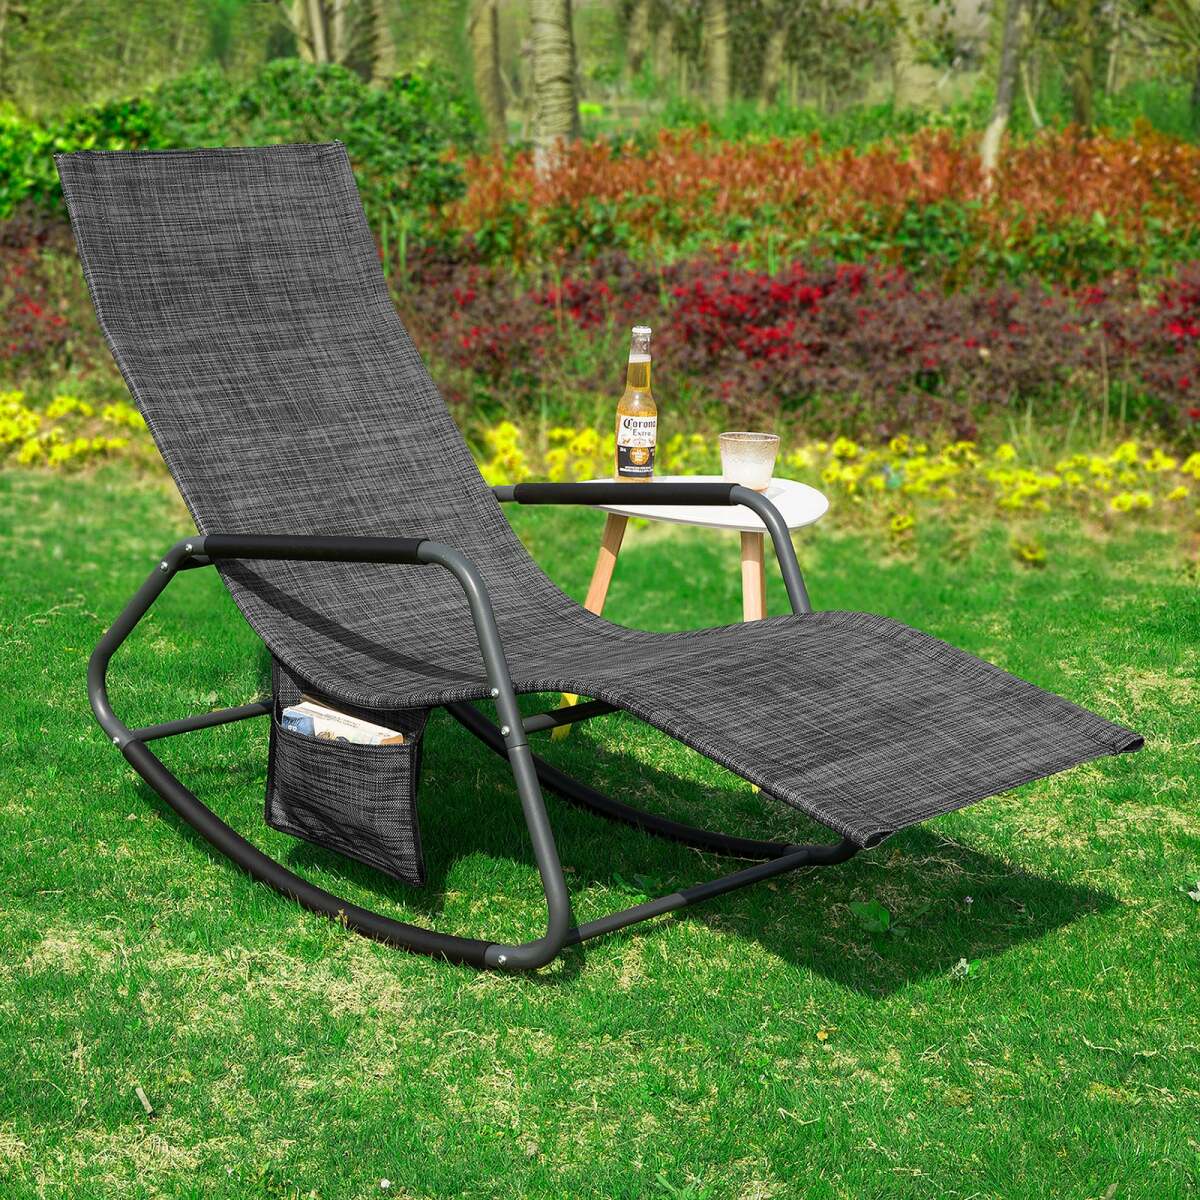 sobuy ogs47-ms fauteuil à bascule transat de relaxation chaise longue bain de soleil rocking chair